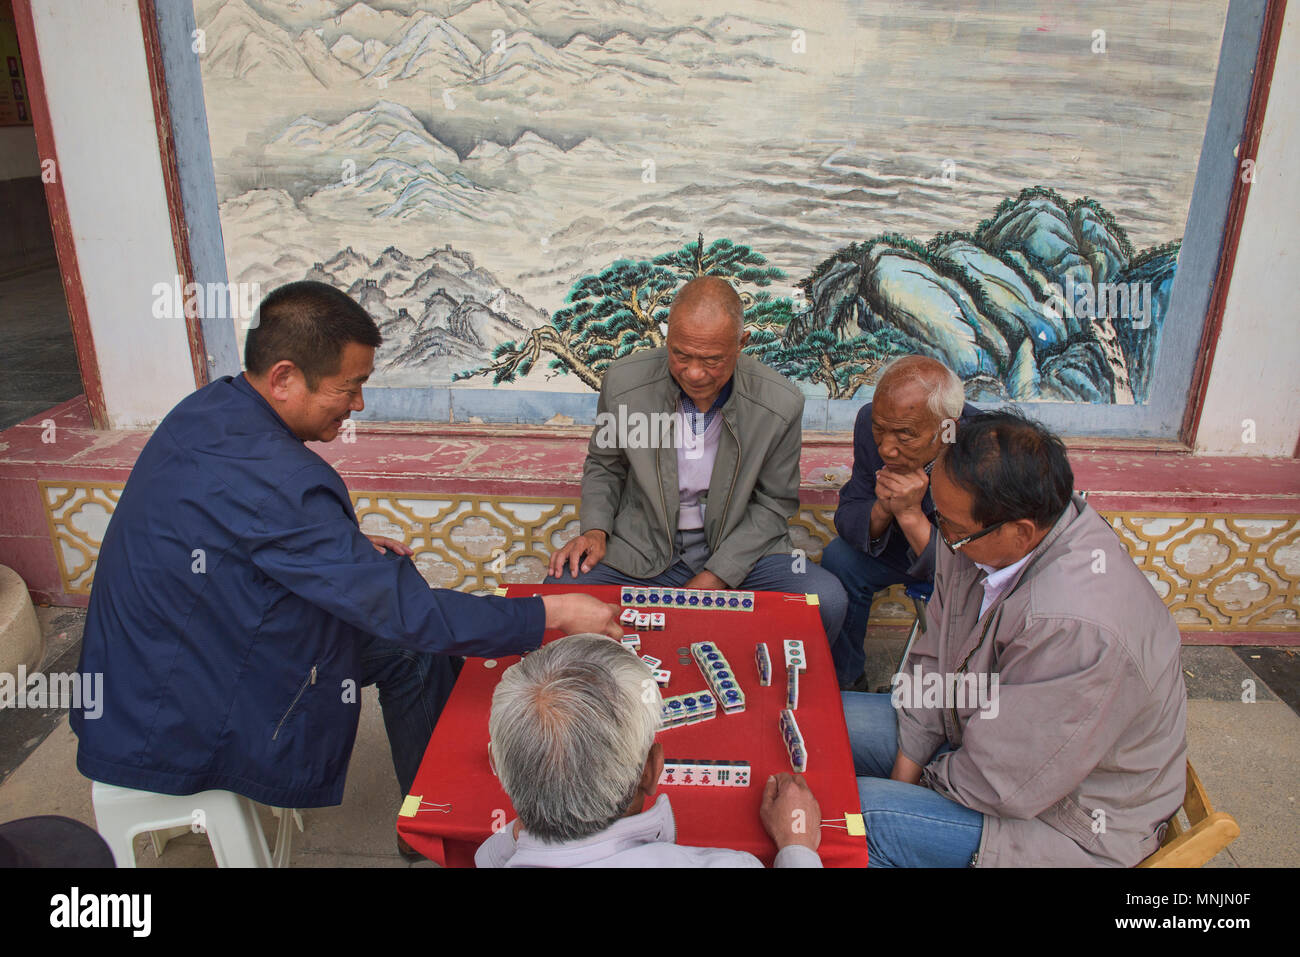 Senior citizens playing mahjong (Chinese dominoes), Zhangye, Gansu, China Stock Photo